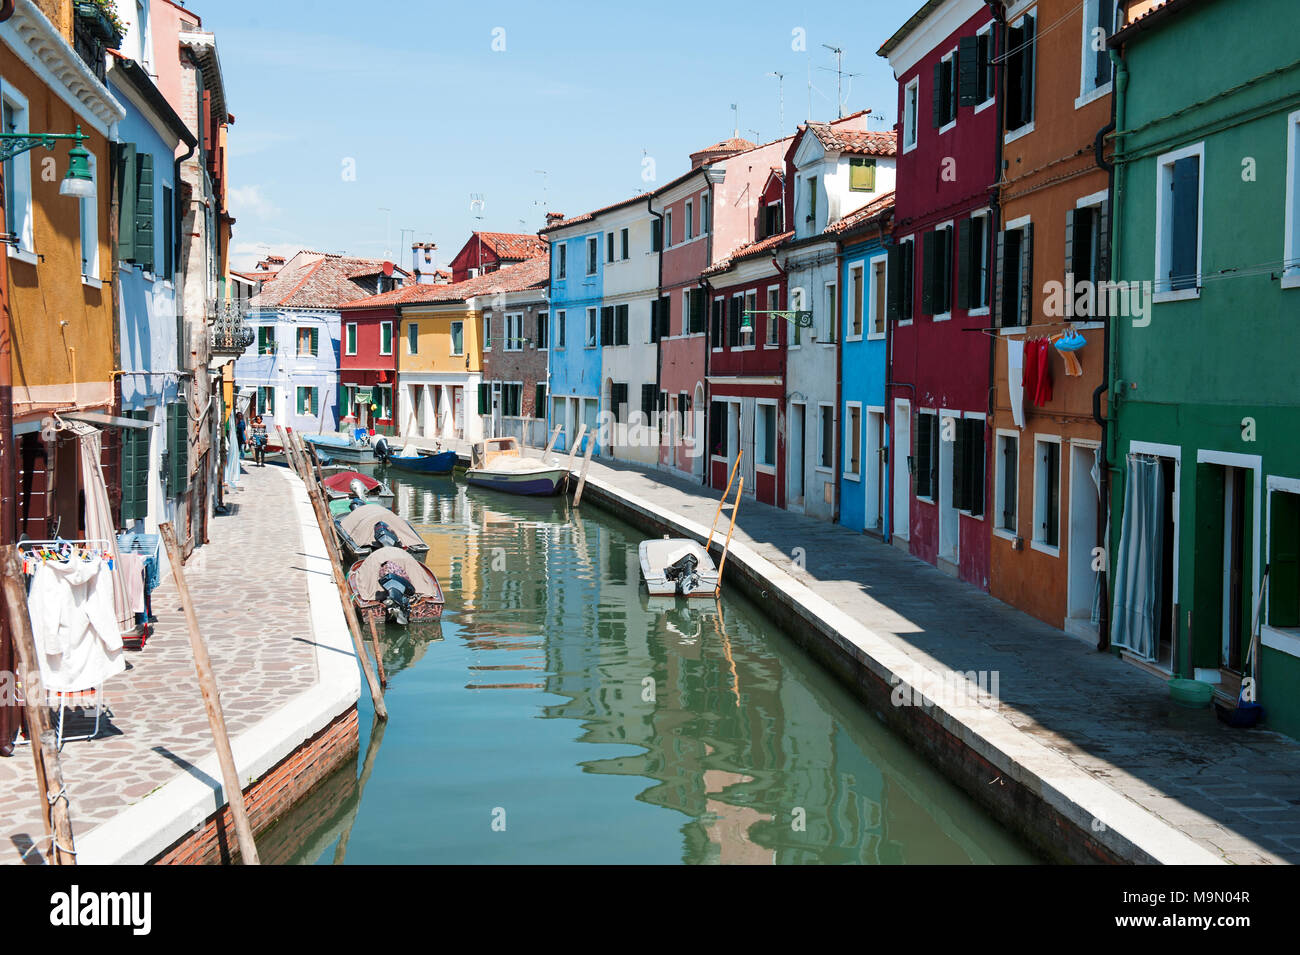 BURANO, Venise, Italie - 16 avril 2017 : vue sur le canal et ses maisons colorées dans une journée ensoleillée Banque D'Images